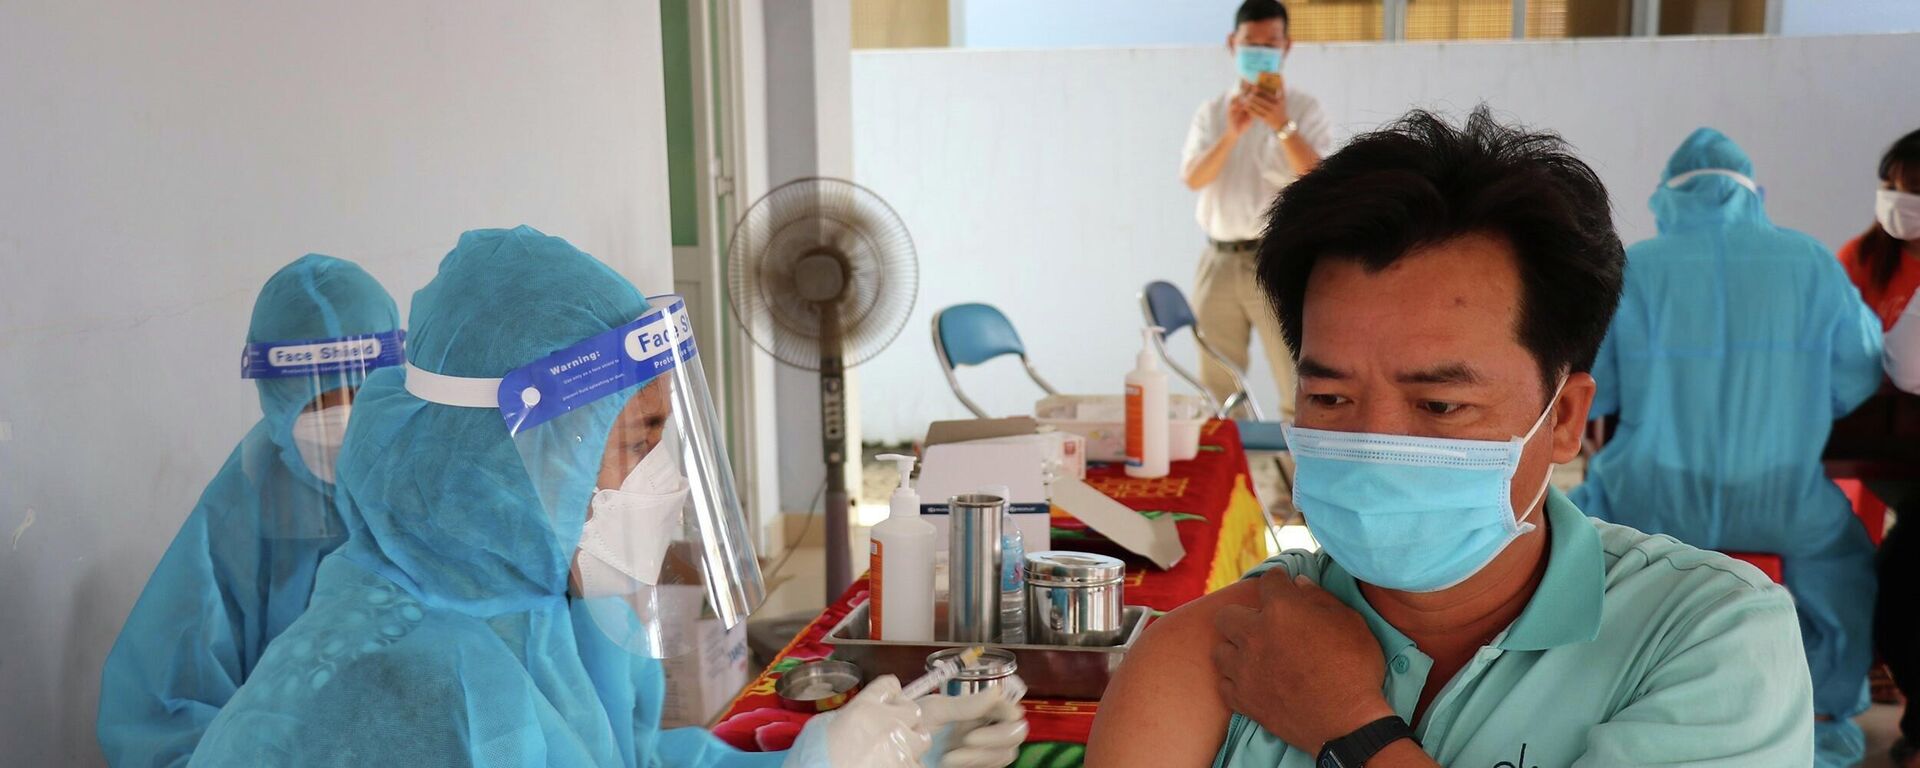 Đến nay, đã có 198.900 công nhân, người lao động đã được tiêm vaccine phòng COVID-19, trong đó tỷ lệ tiêm mũi 1 đạt 74,7%, mũi 2 đạt 22,3%.  - Sputnik Việt Nam, 1920, 17.10.2021